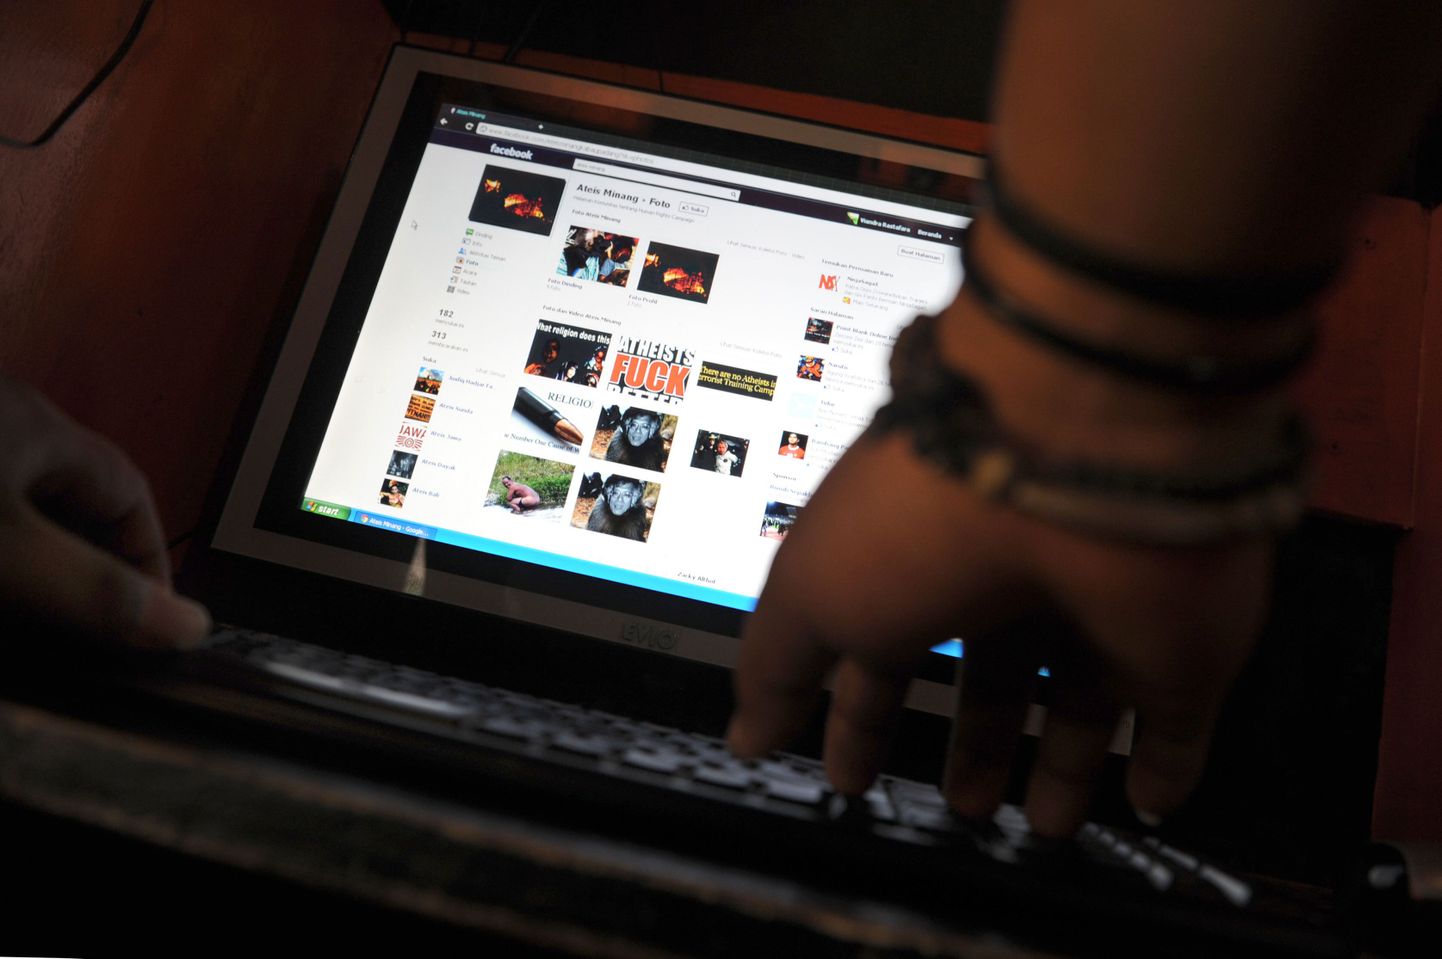 Briti politsei uurib Facebooki riputatud alaealiste seksivideot